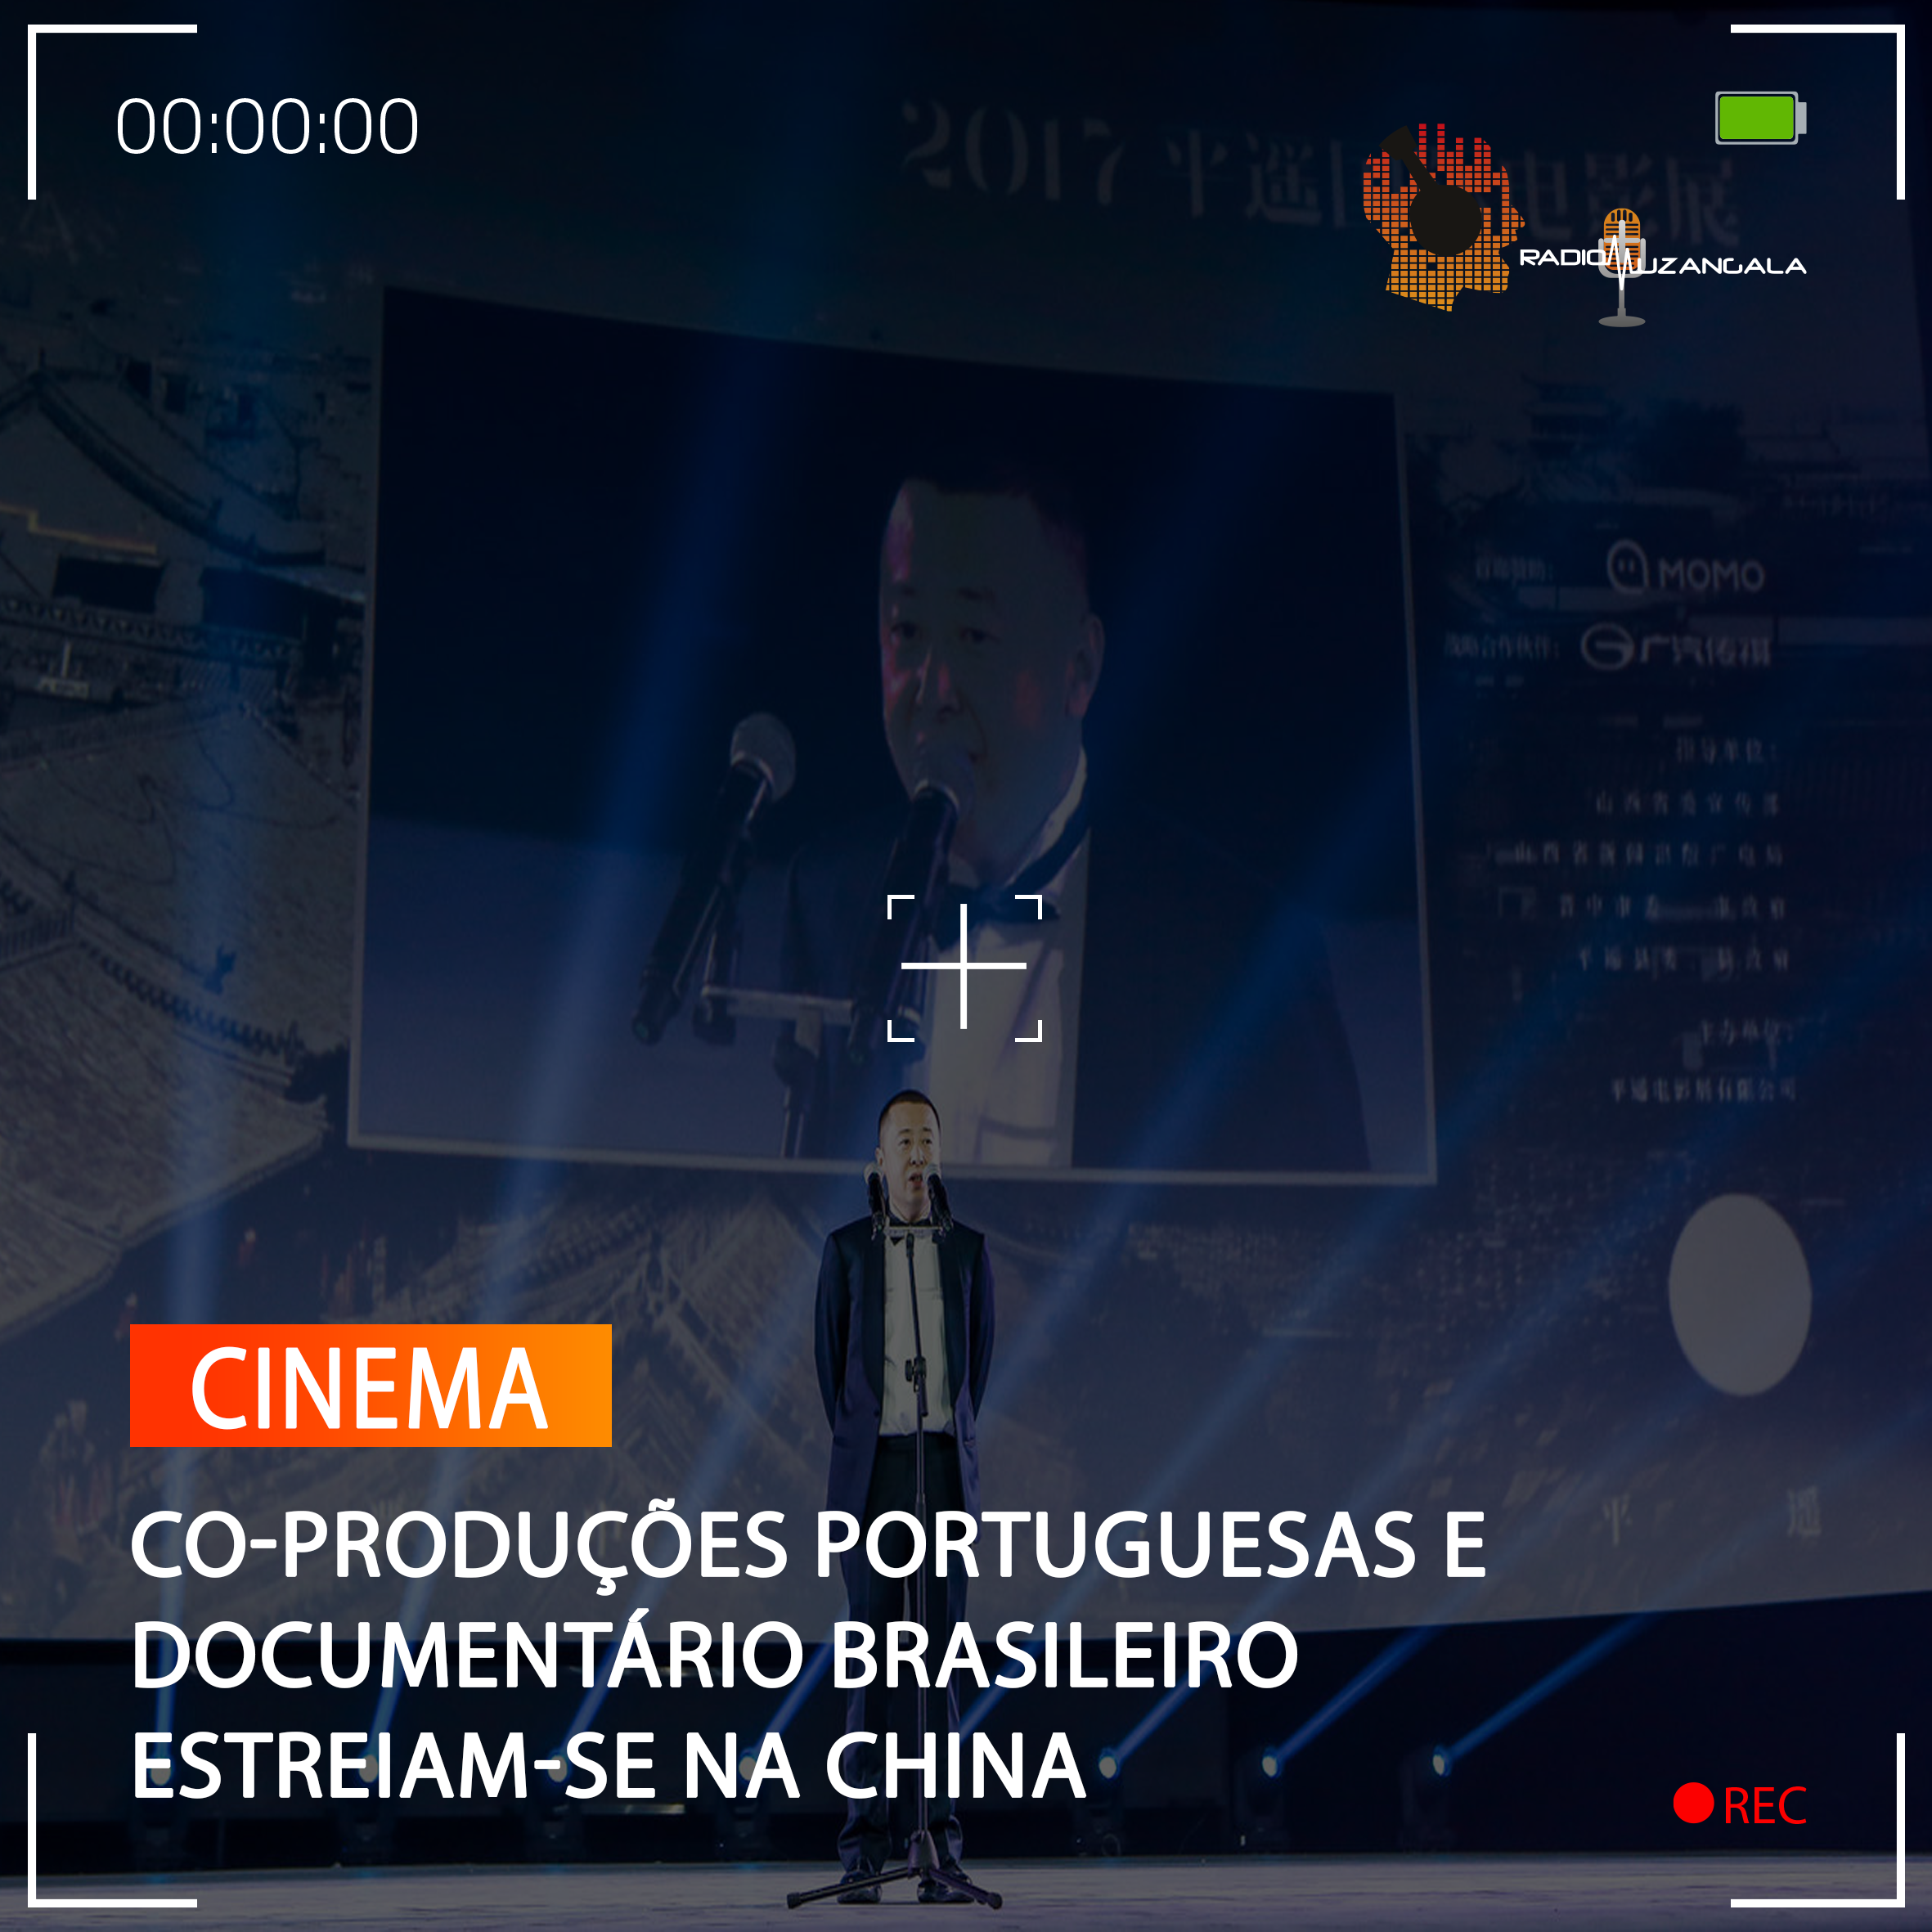  CO-PRODUÇÕES PORTUGUESAS E DOCUMENTÁRIO BRASILEIRO ESTREIAM-SE NA CHINA